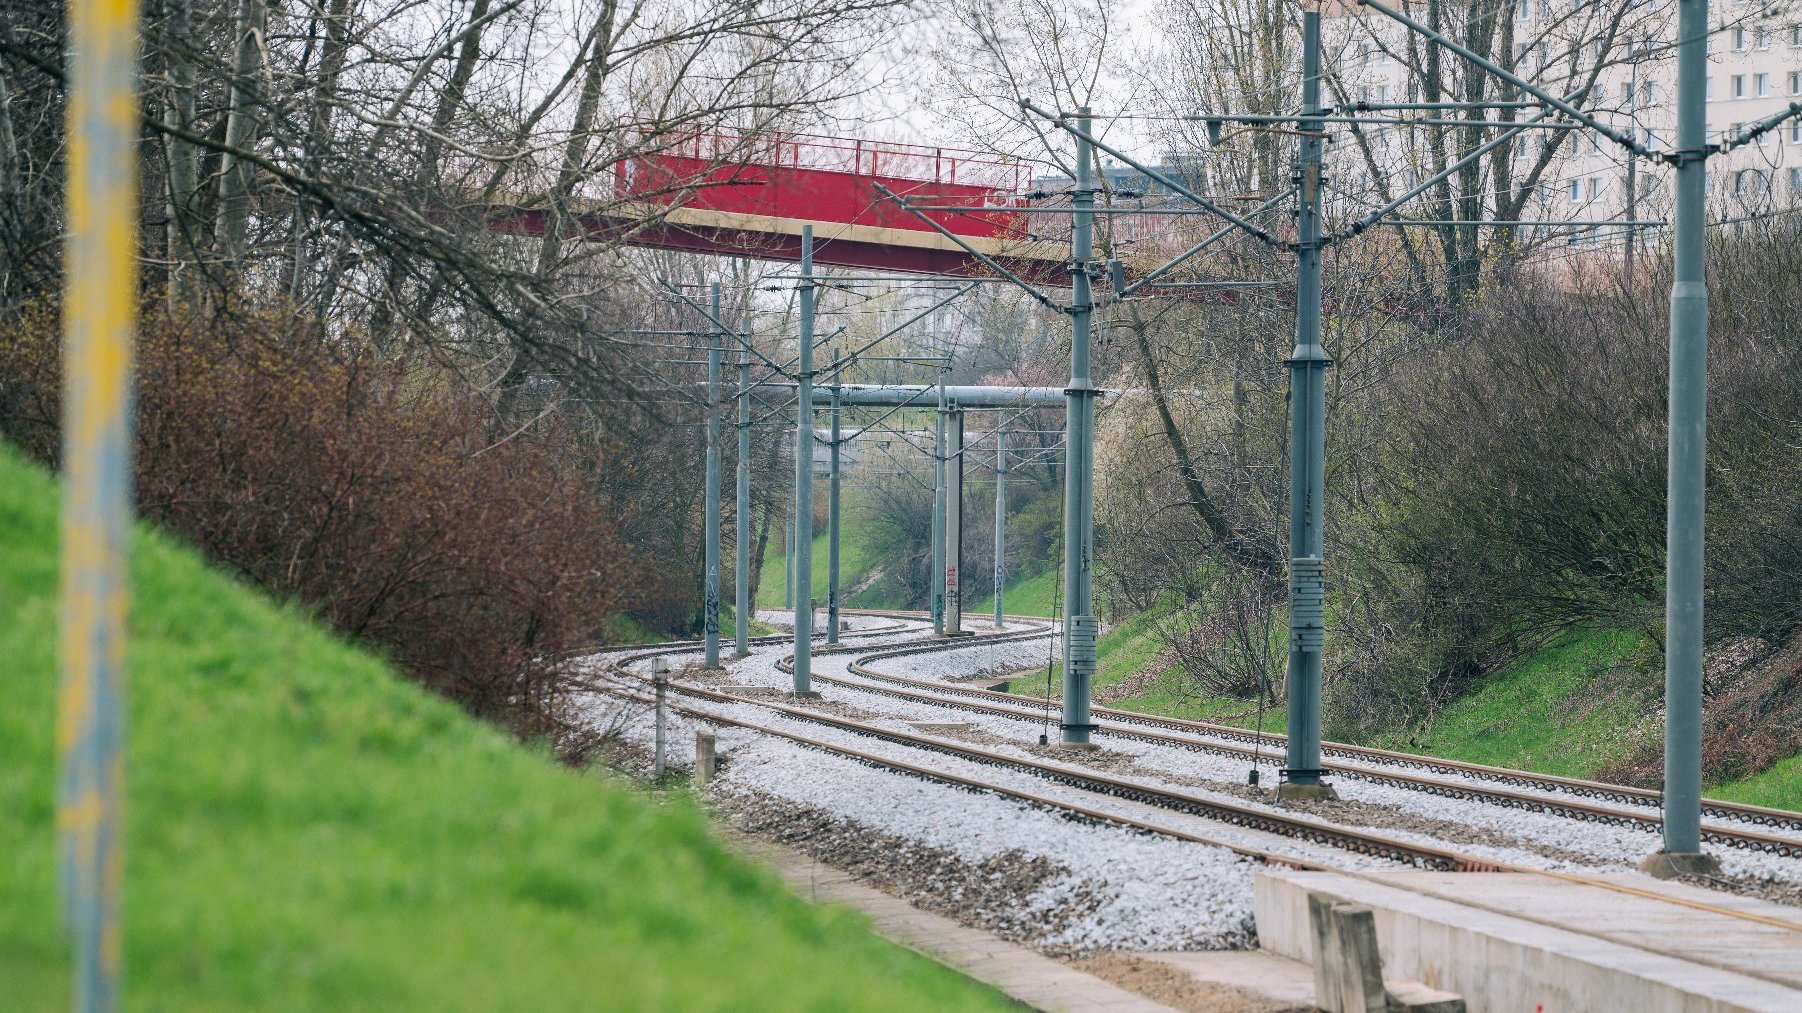 Galeria zdjęć z trasy Poznańskiego Szybkiego Tramwaju